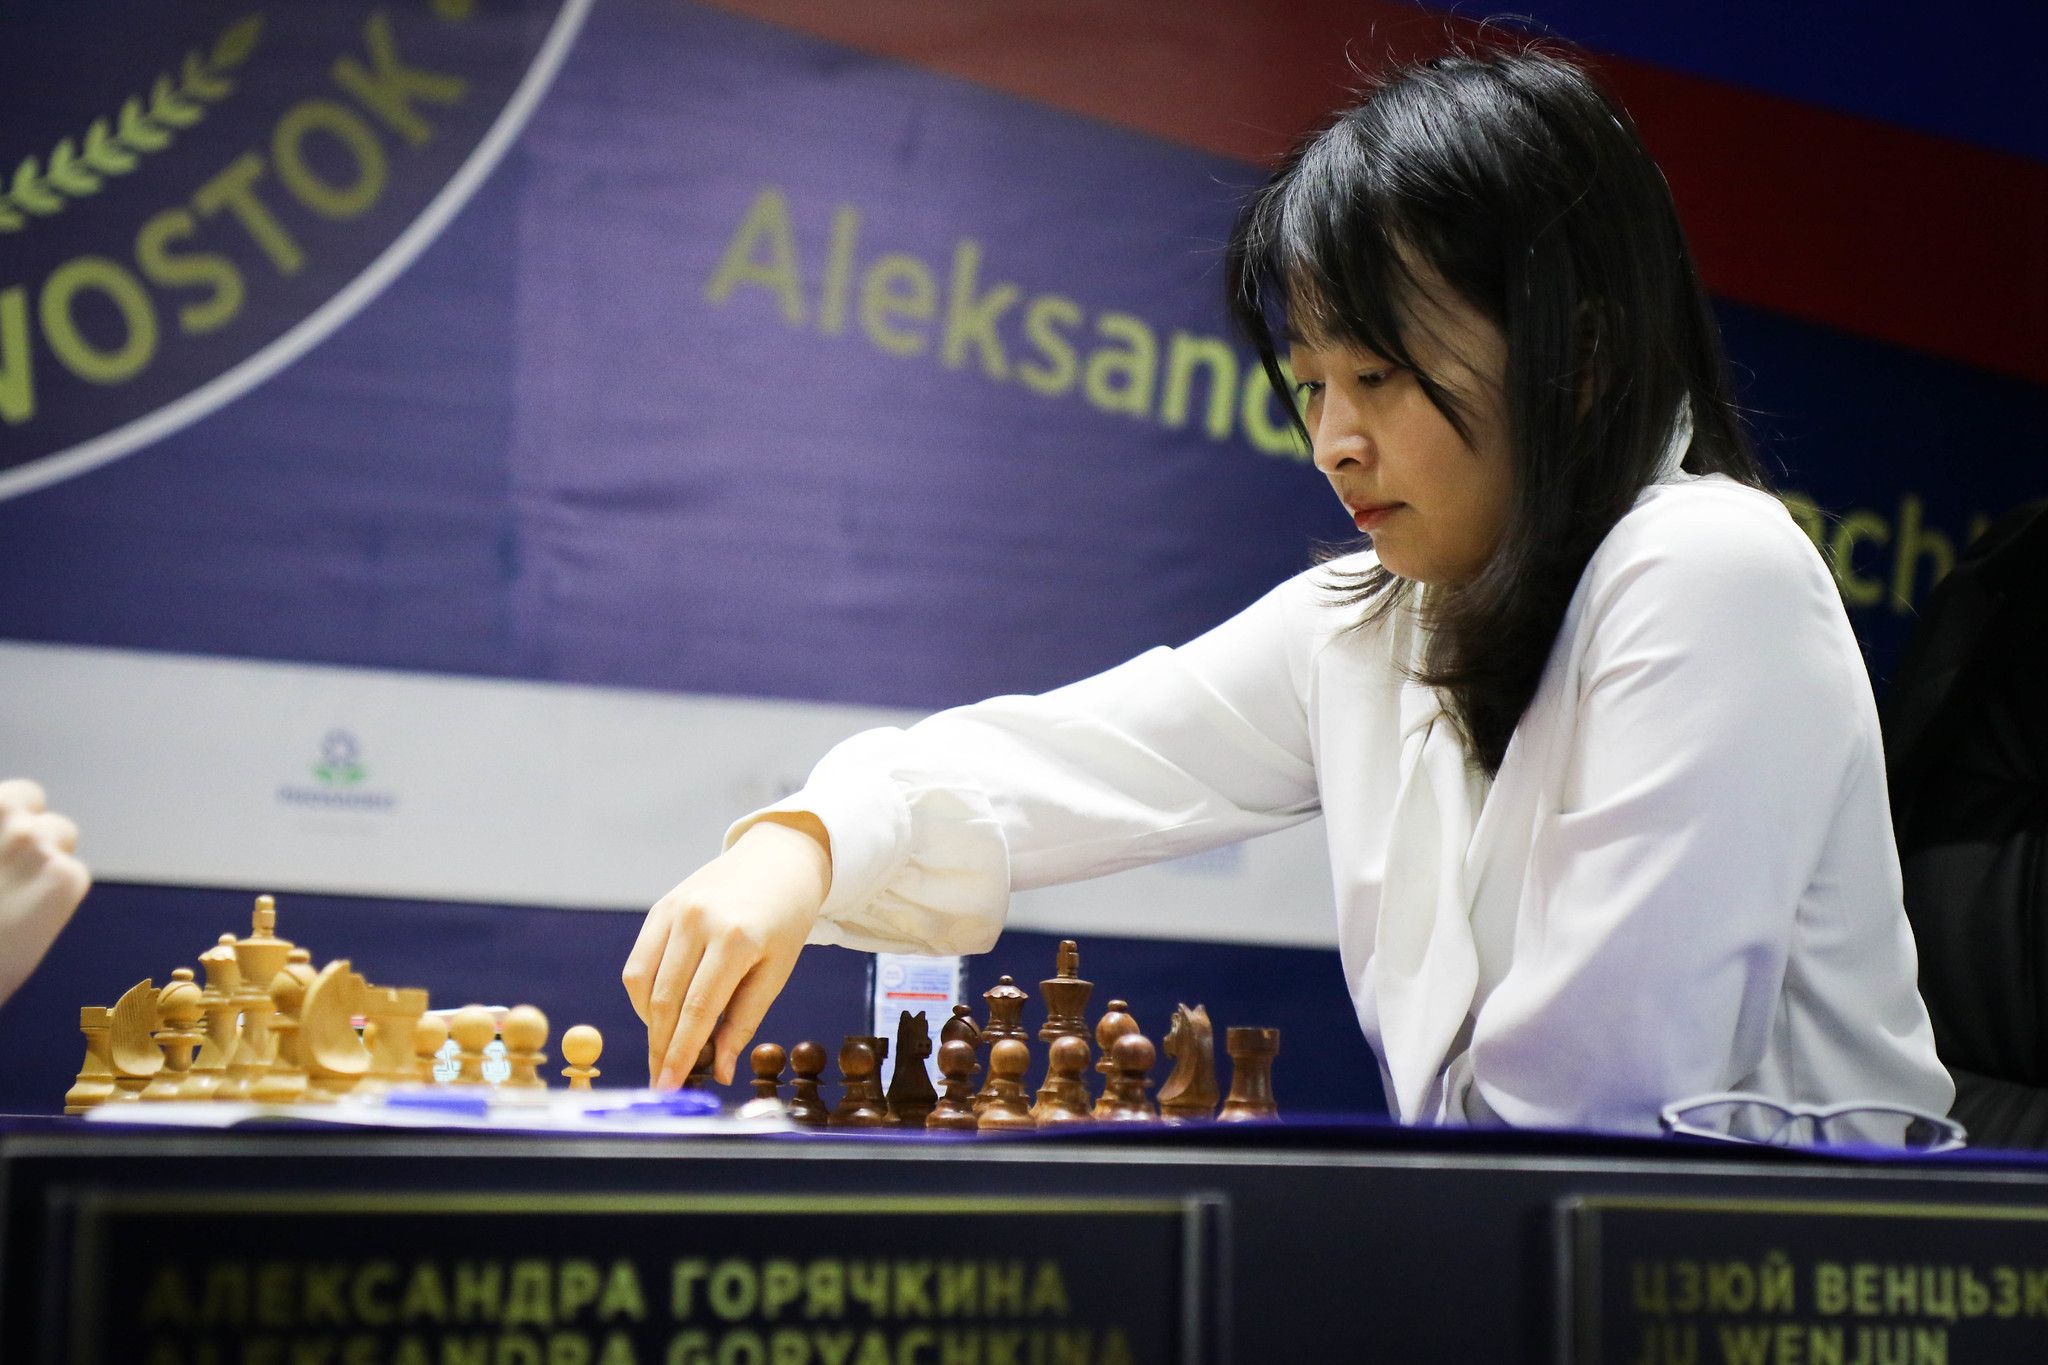 2020 Women's Chess Championship (Ju vs. Goryachkina) - The Chess Drum